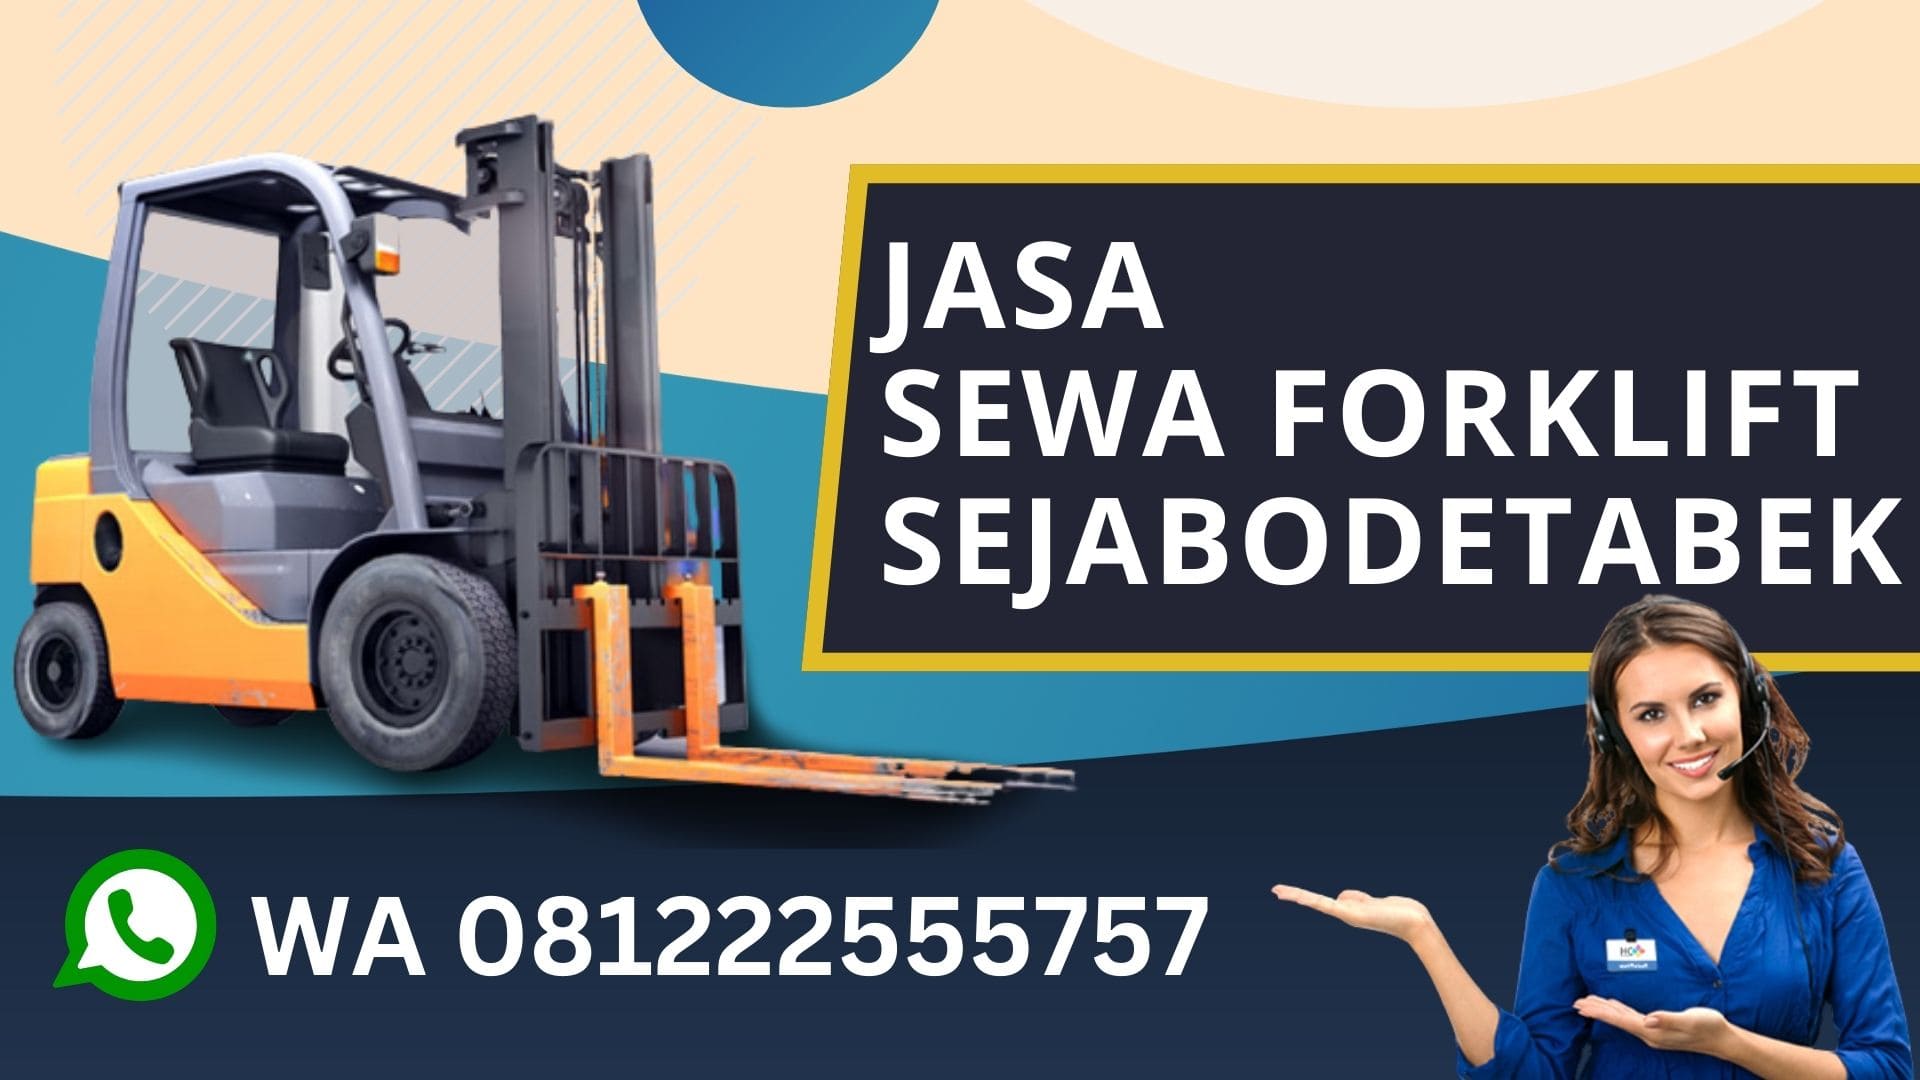 WA 081222555757 Sewa Forklift Menteng Jakarta Pusat, Rental Forklift, biaya sewa forklift harian, rental forklift bulanan